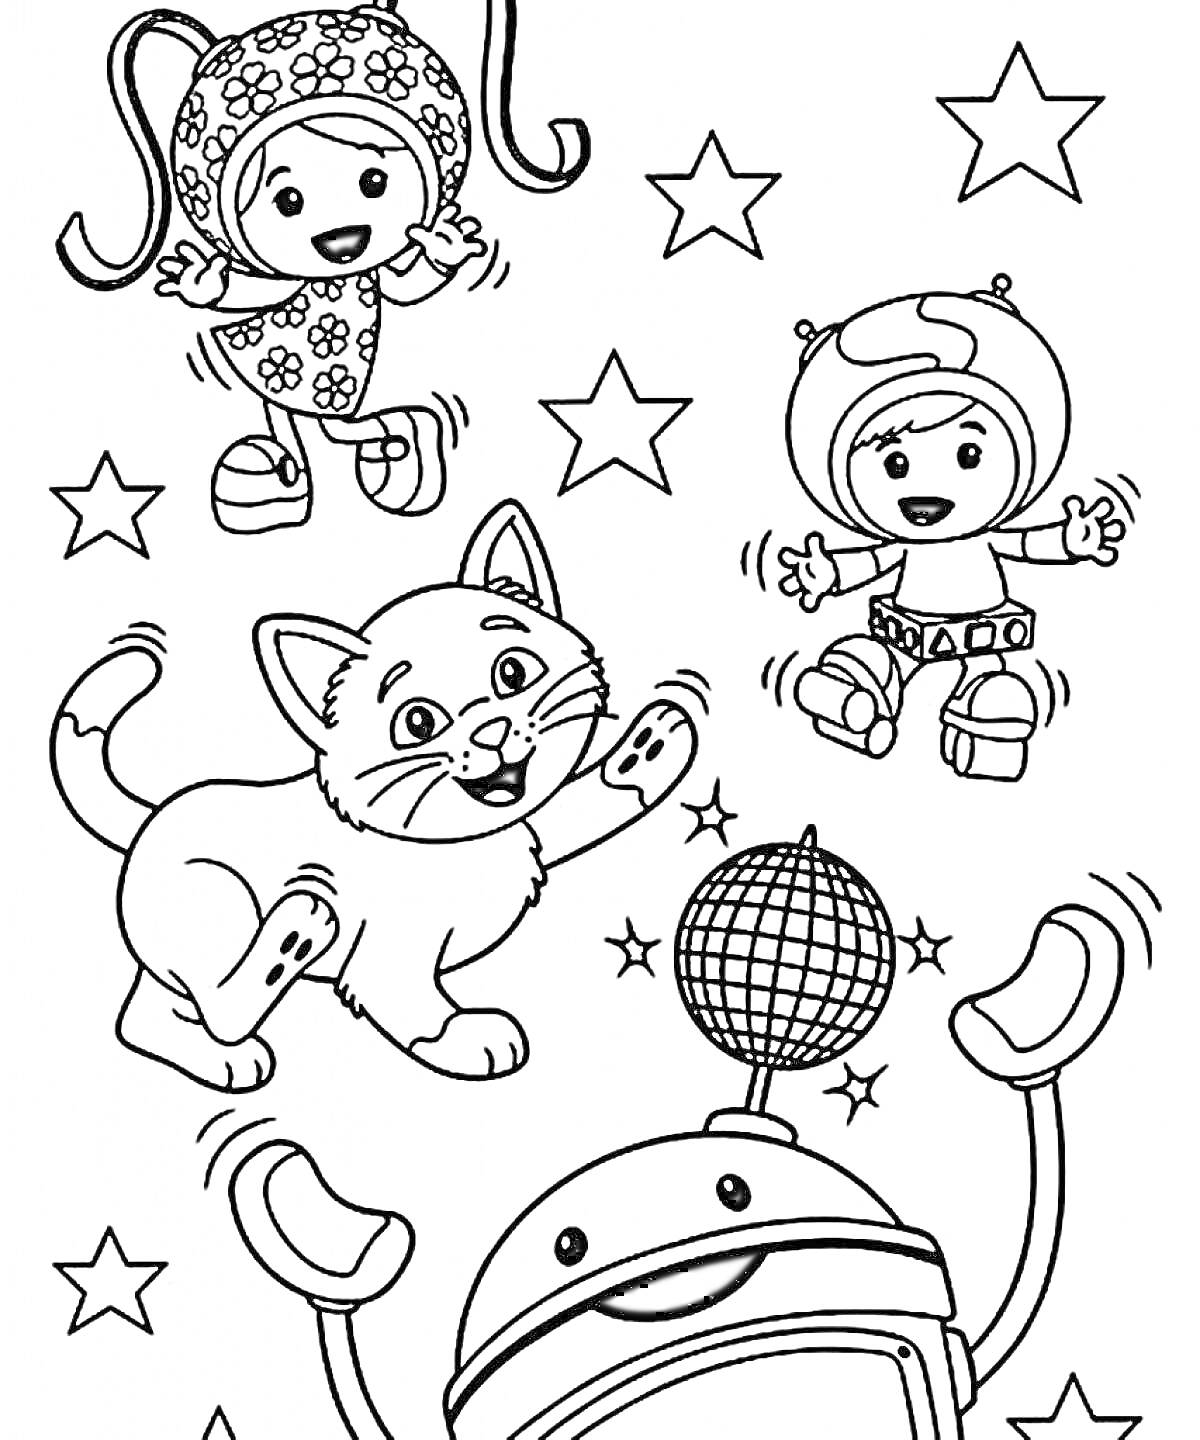 Герои Умизуми с котенком и звездочками